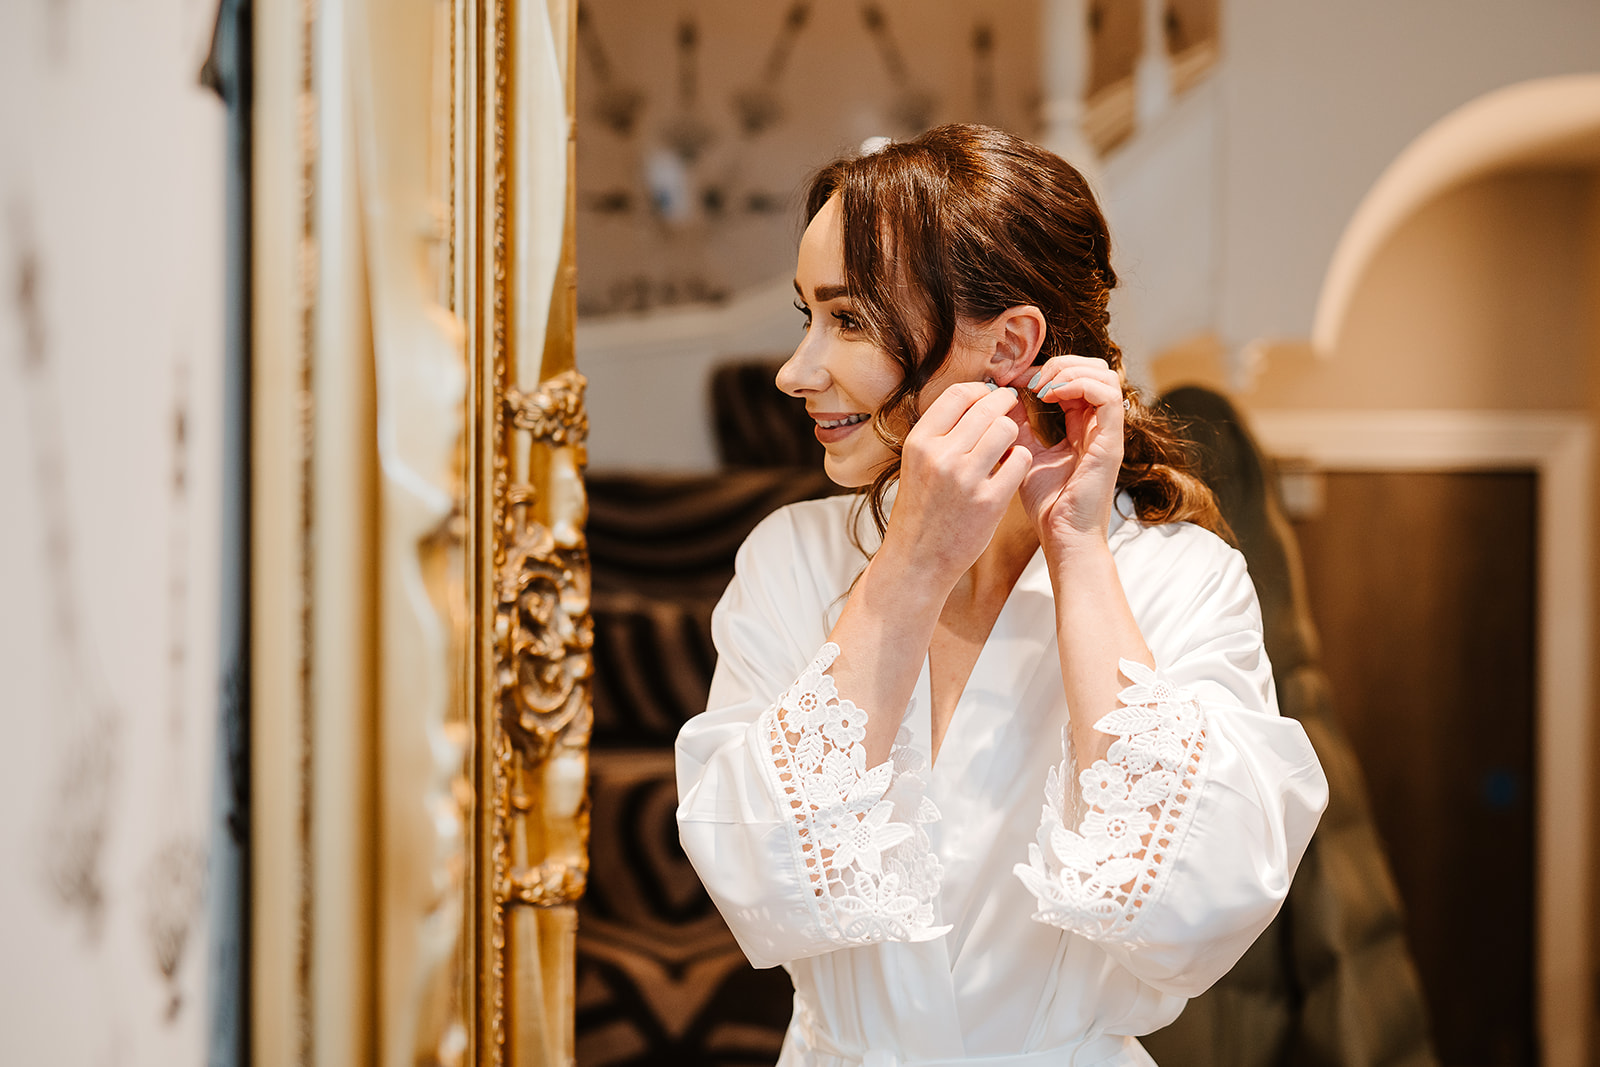 Bride adjusts earrings by mirror